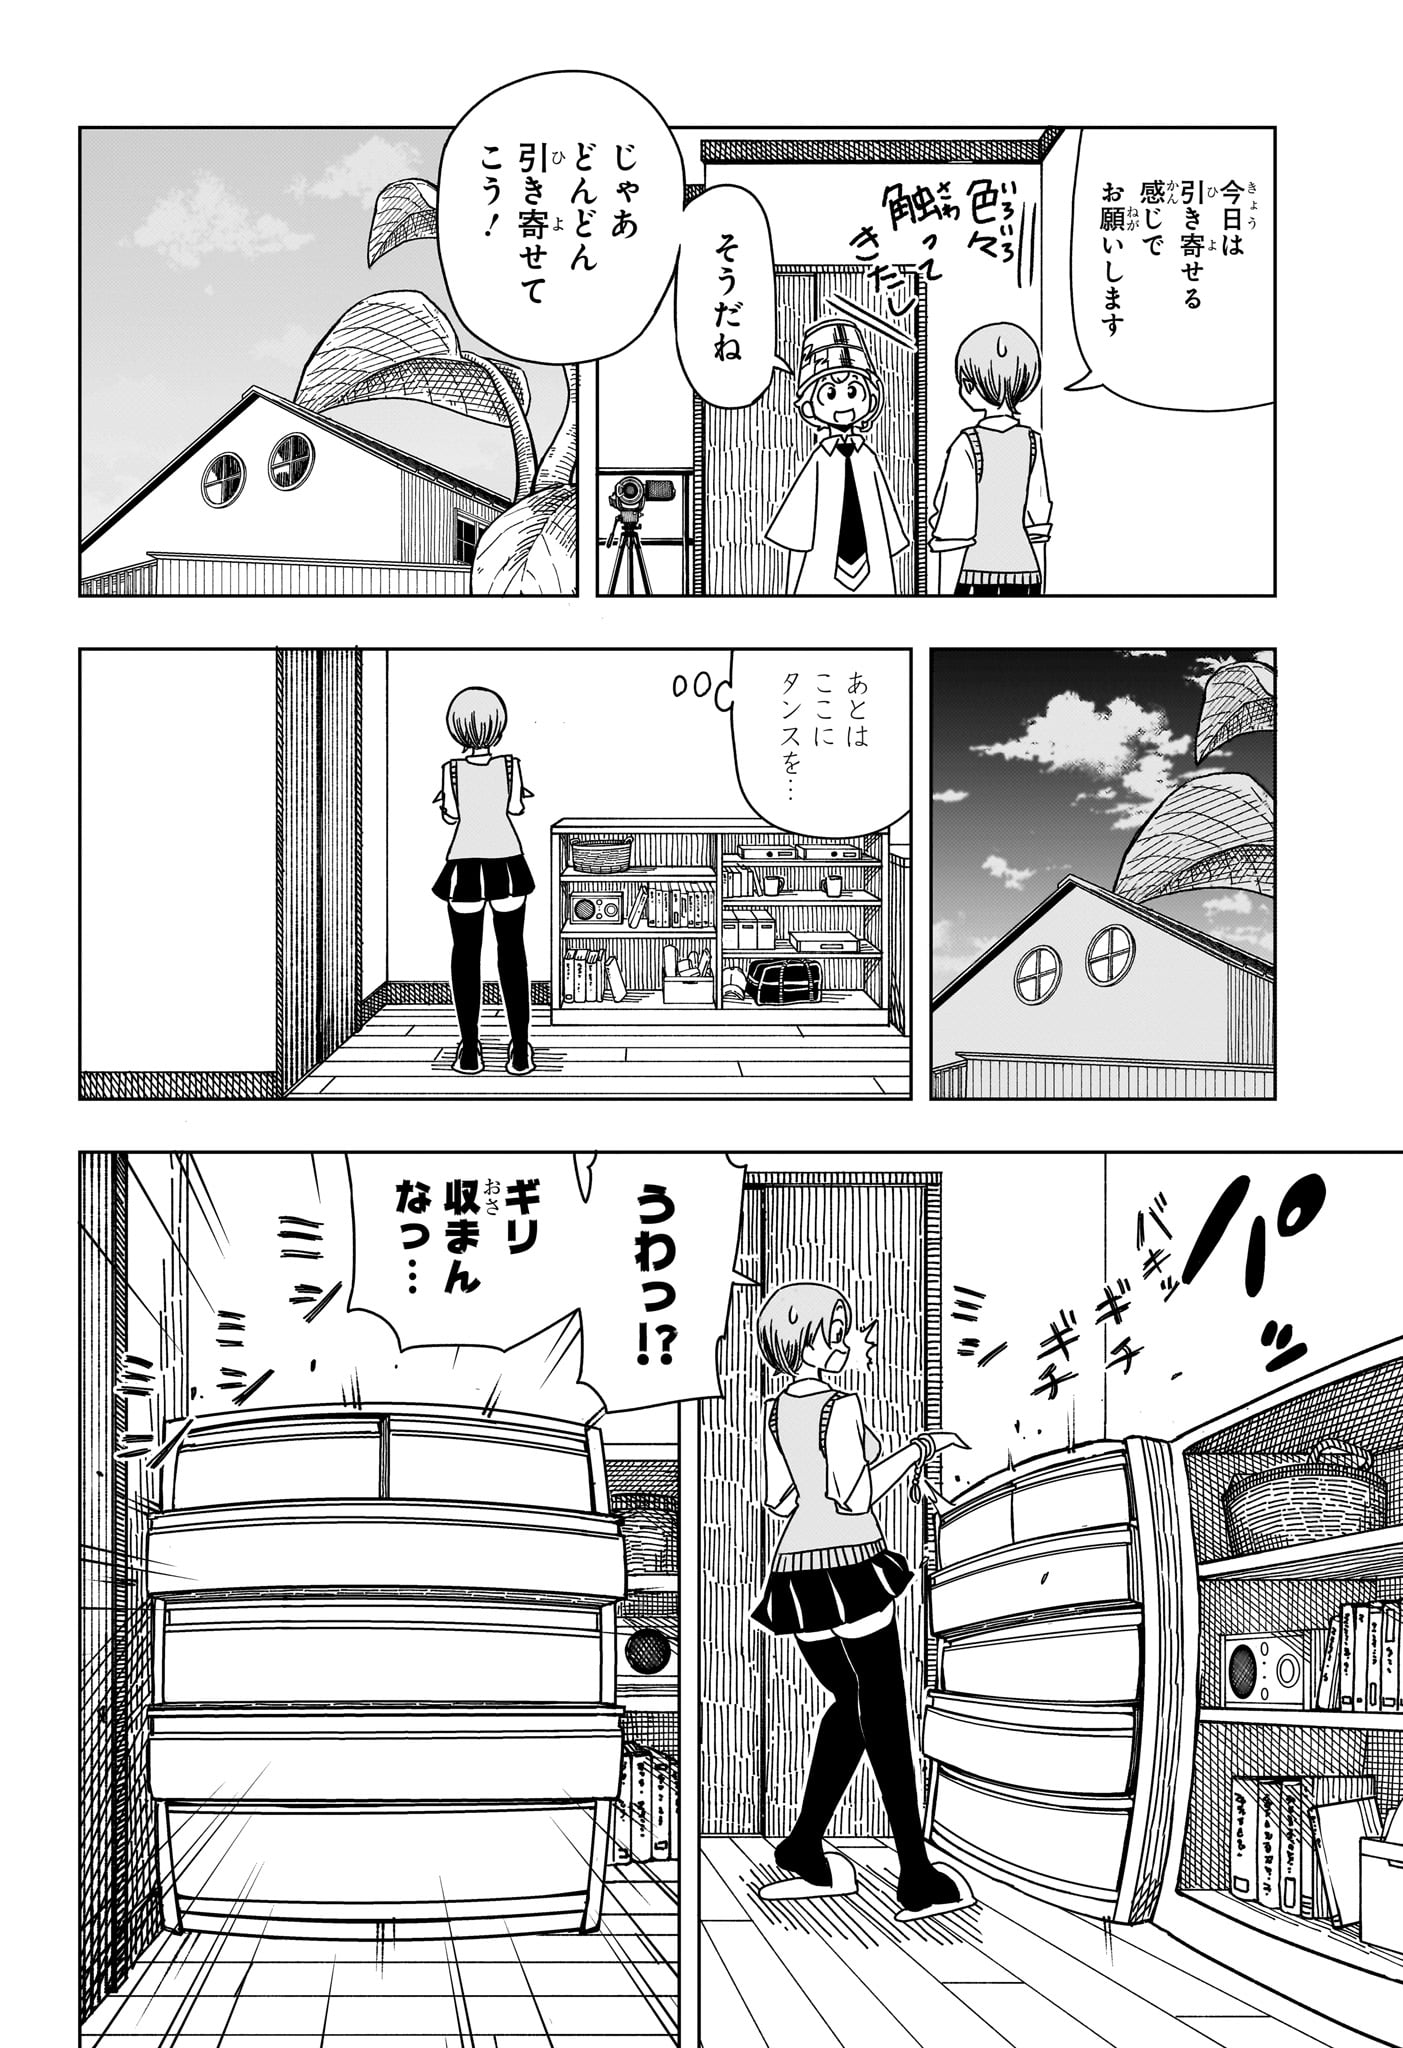 Saikuru Biyori - Chapter 2 - Page 20